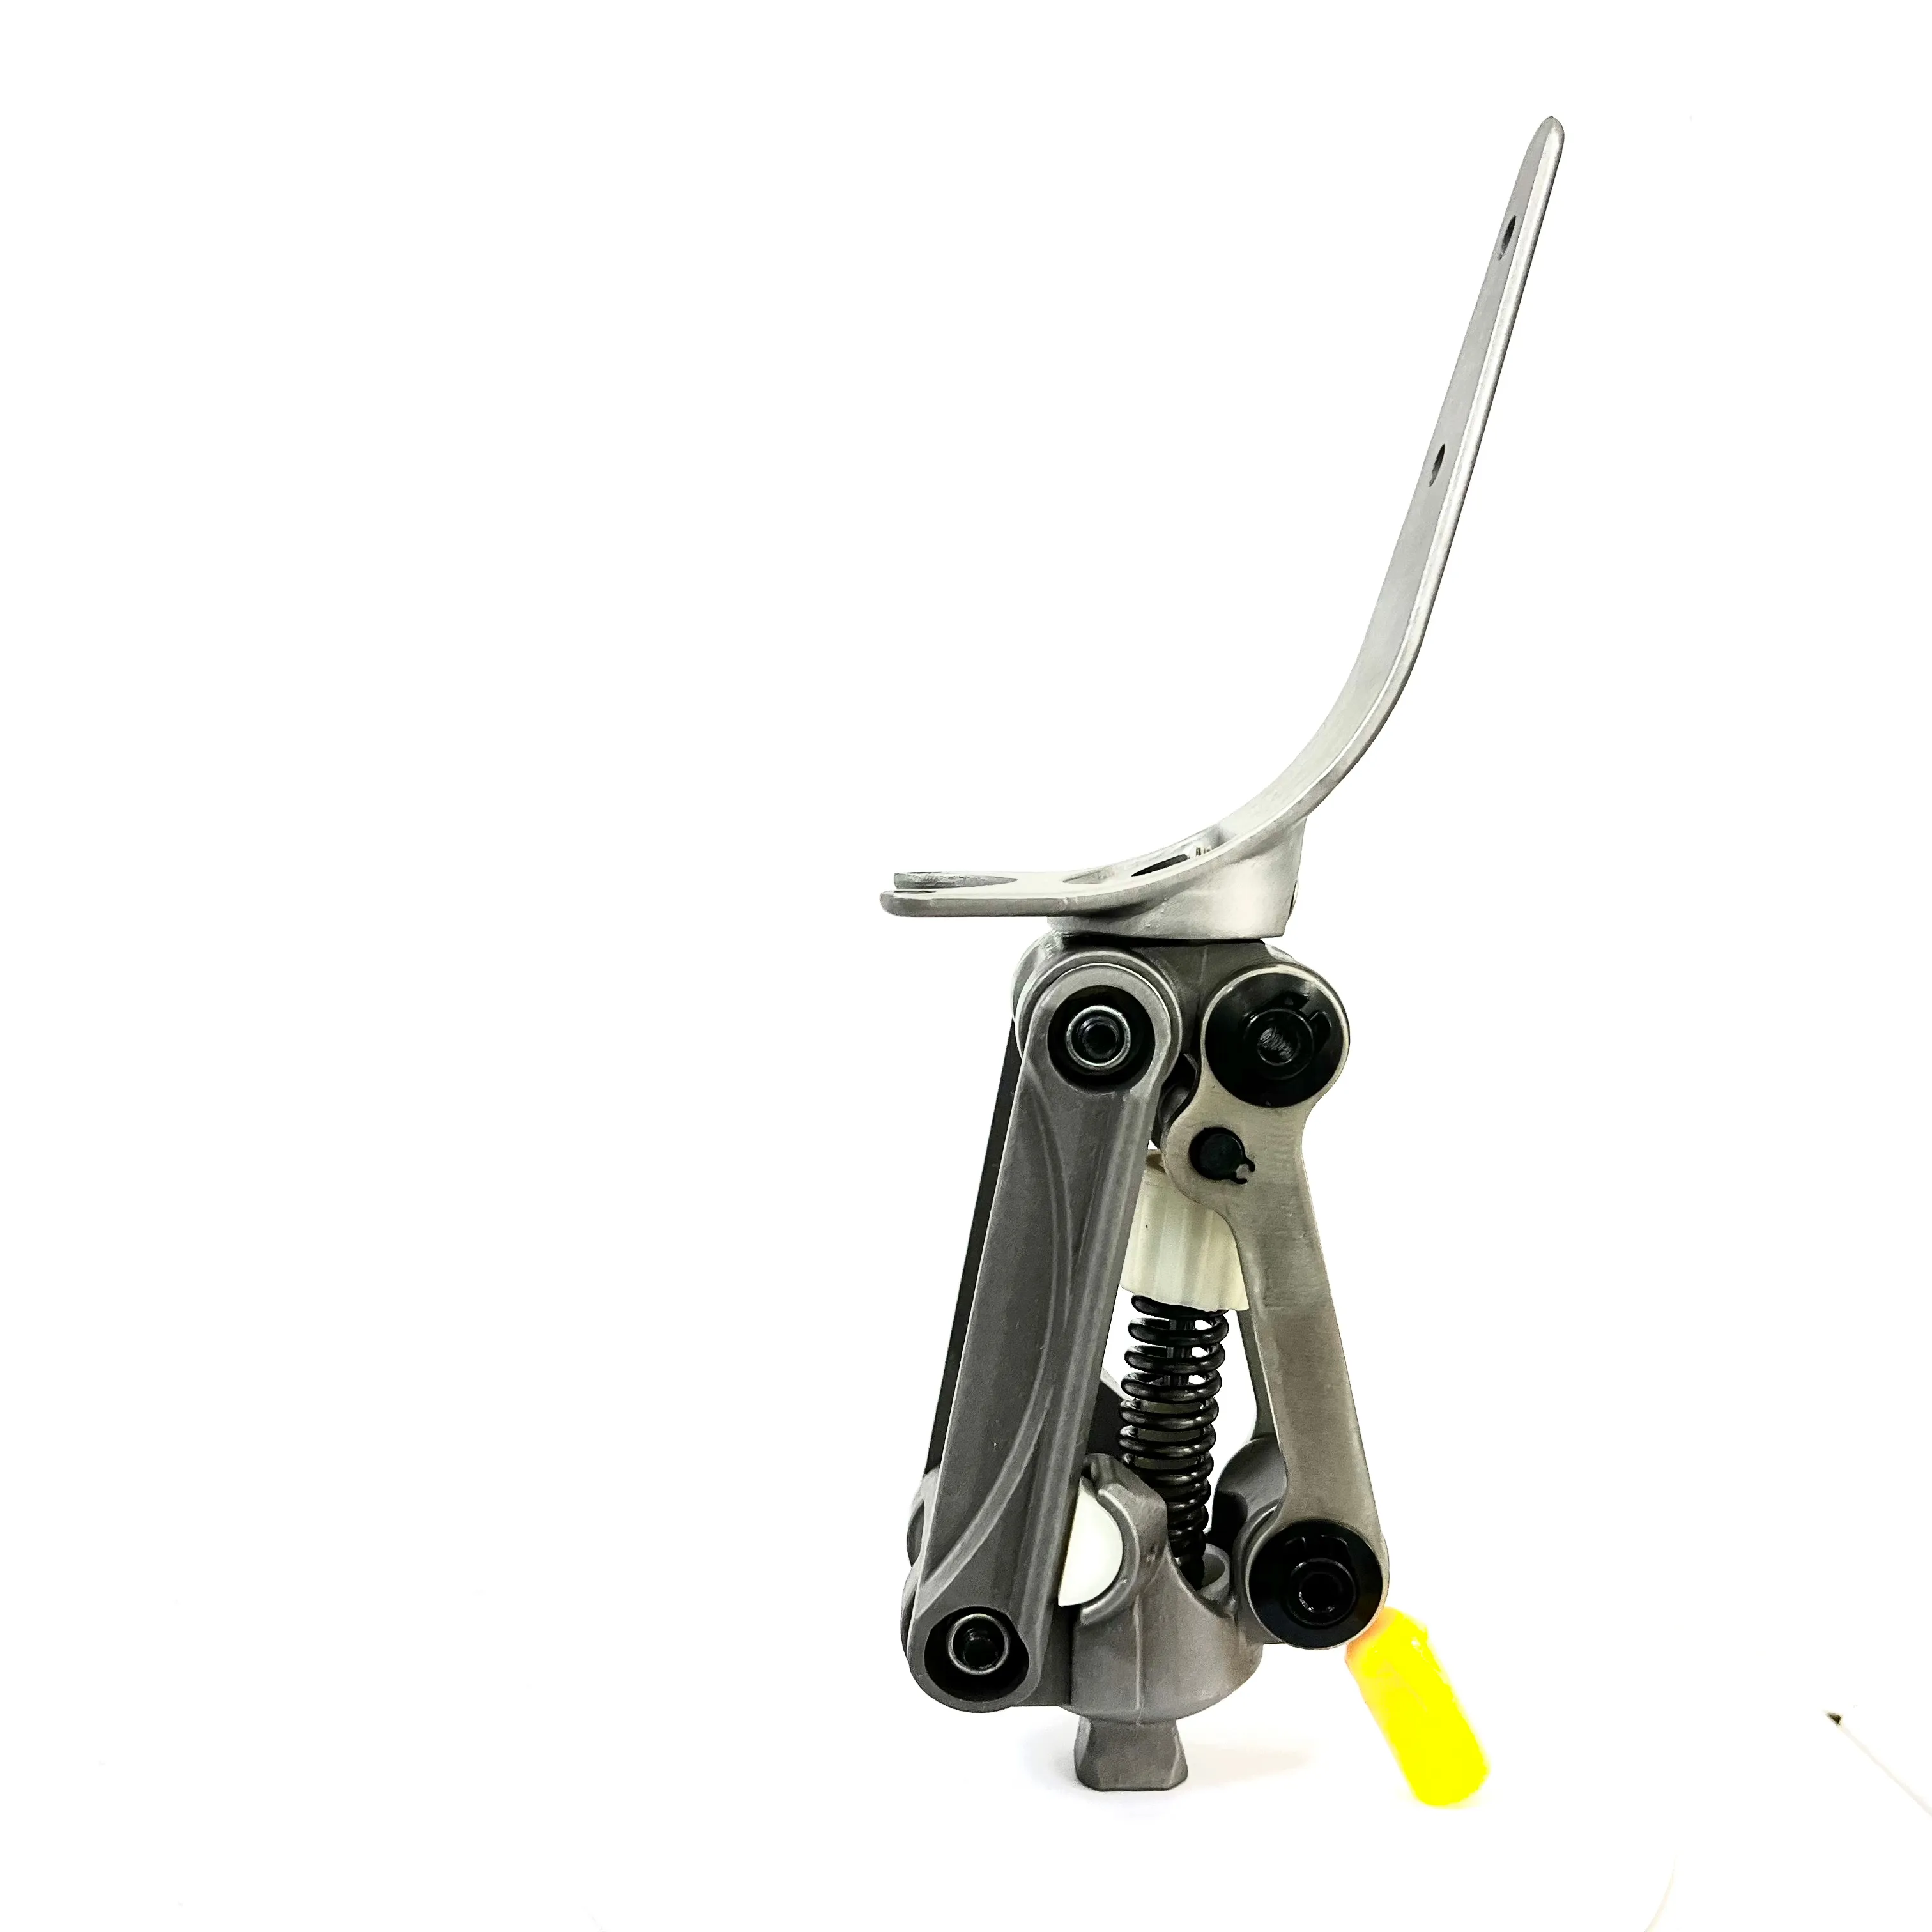 Prótese de joelho de aço inoxidável para articulação de joelho, prótese de quatro barras de ligação para desarticulação do joelho